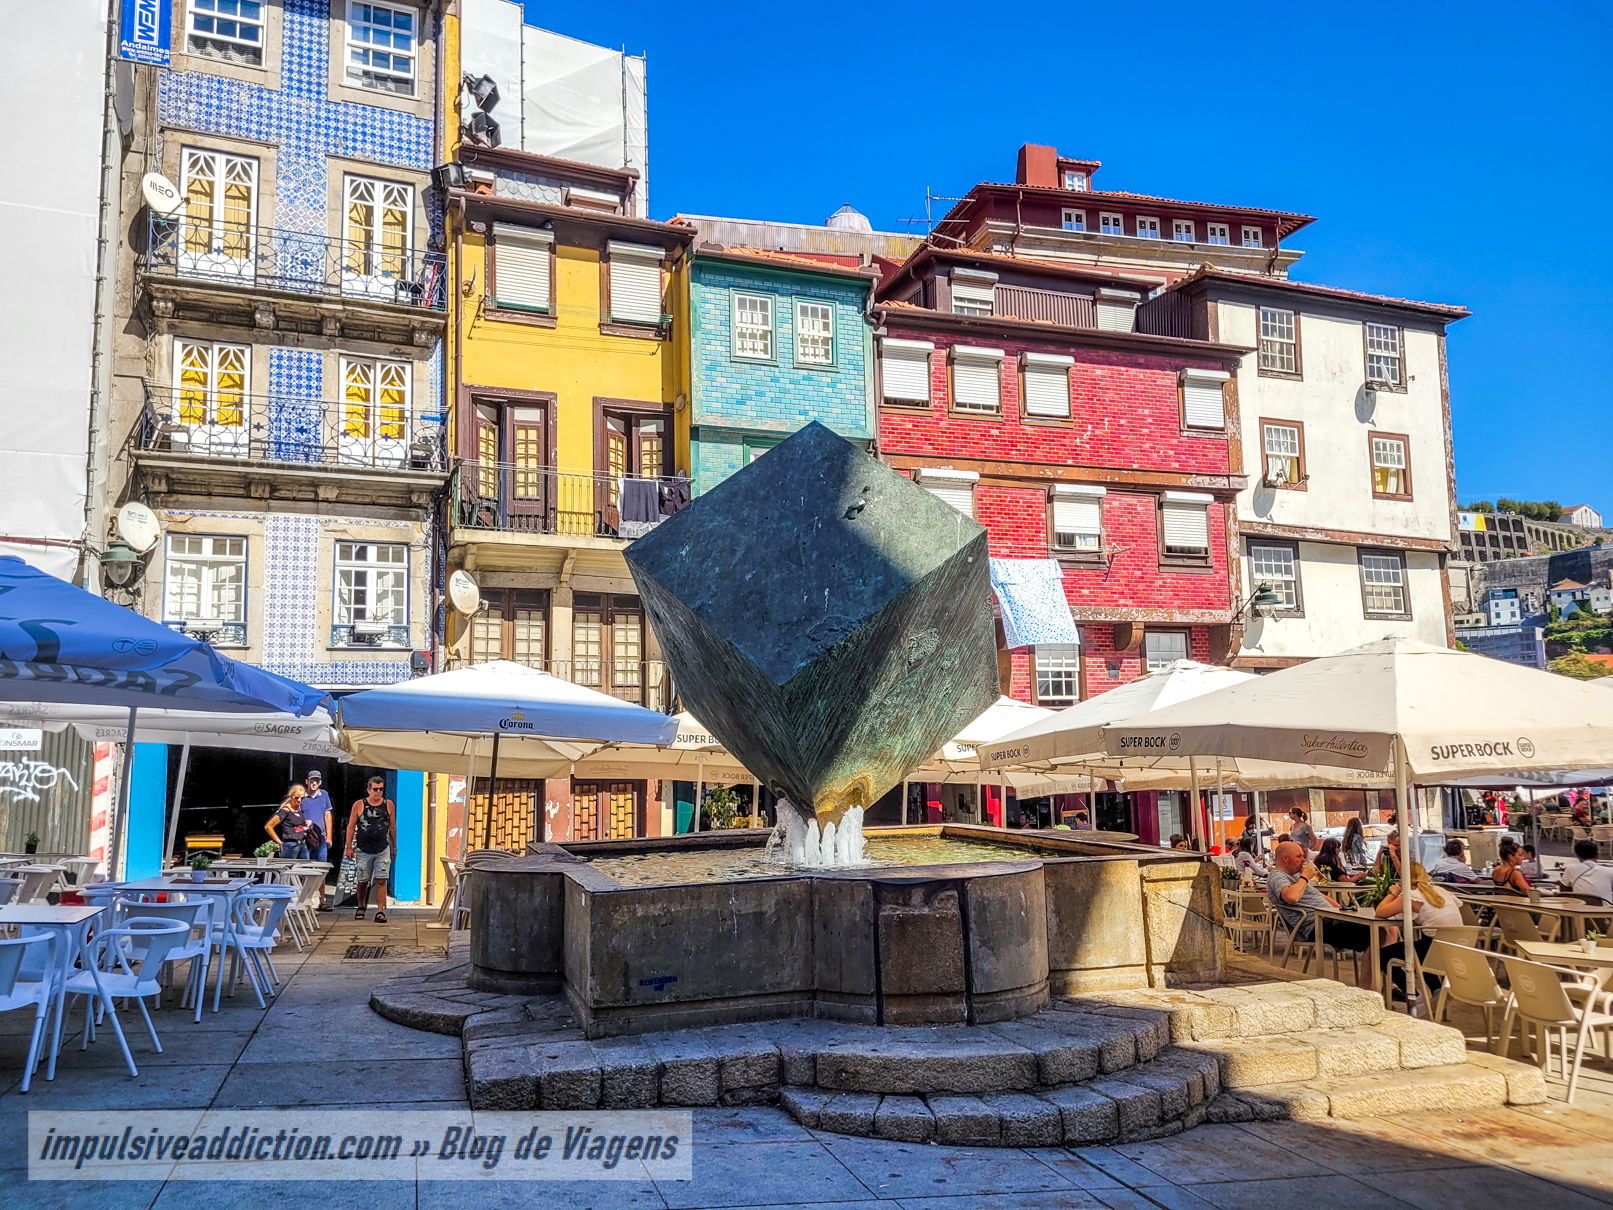 Visiting Ribeira do Porto